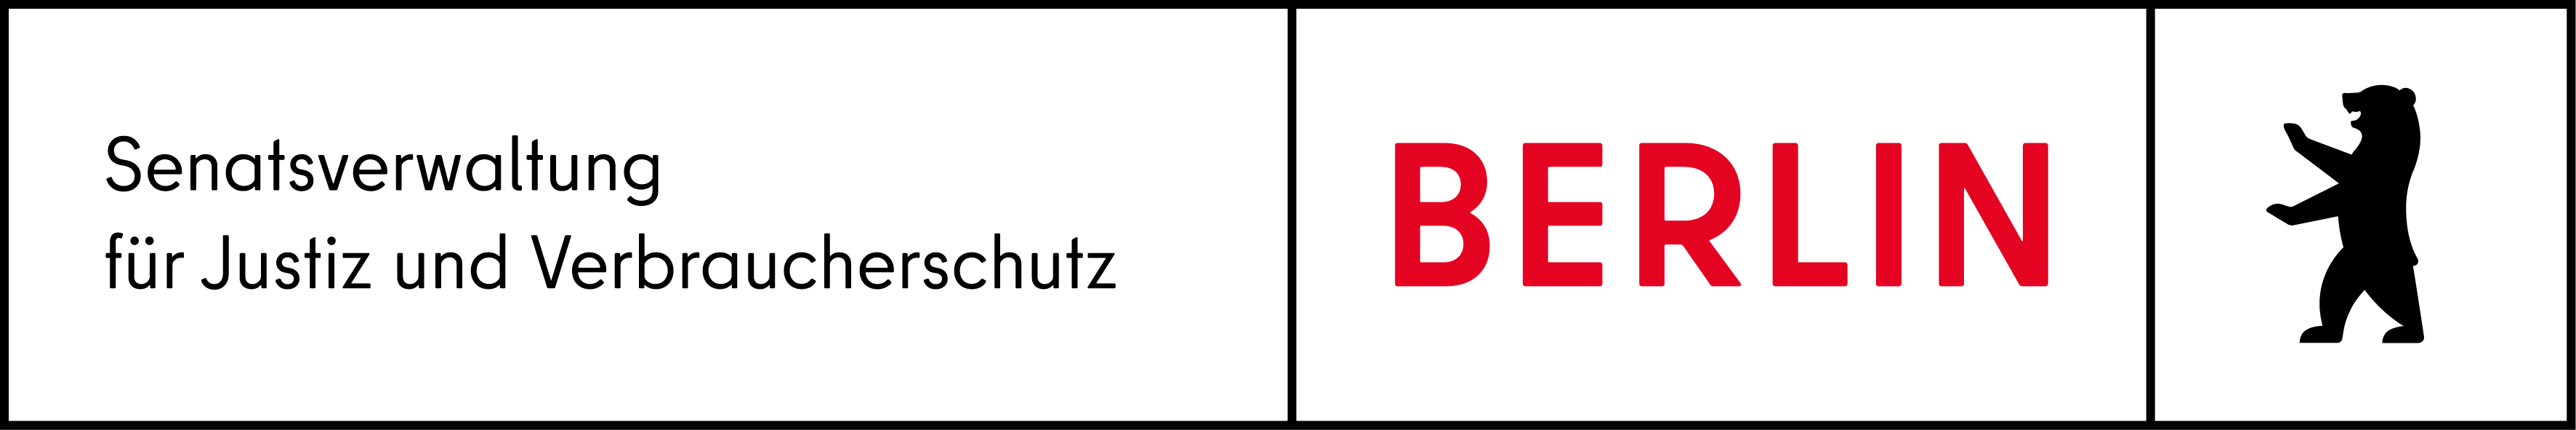 Senatsverwaltung Berlin für Justiz, Verbraucherschutz und Antidiskriminierung logo, go to homepage)}